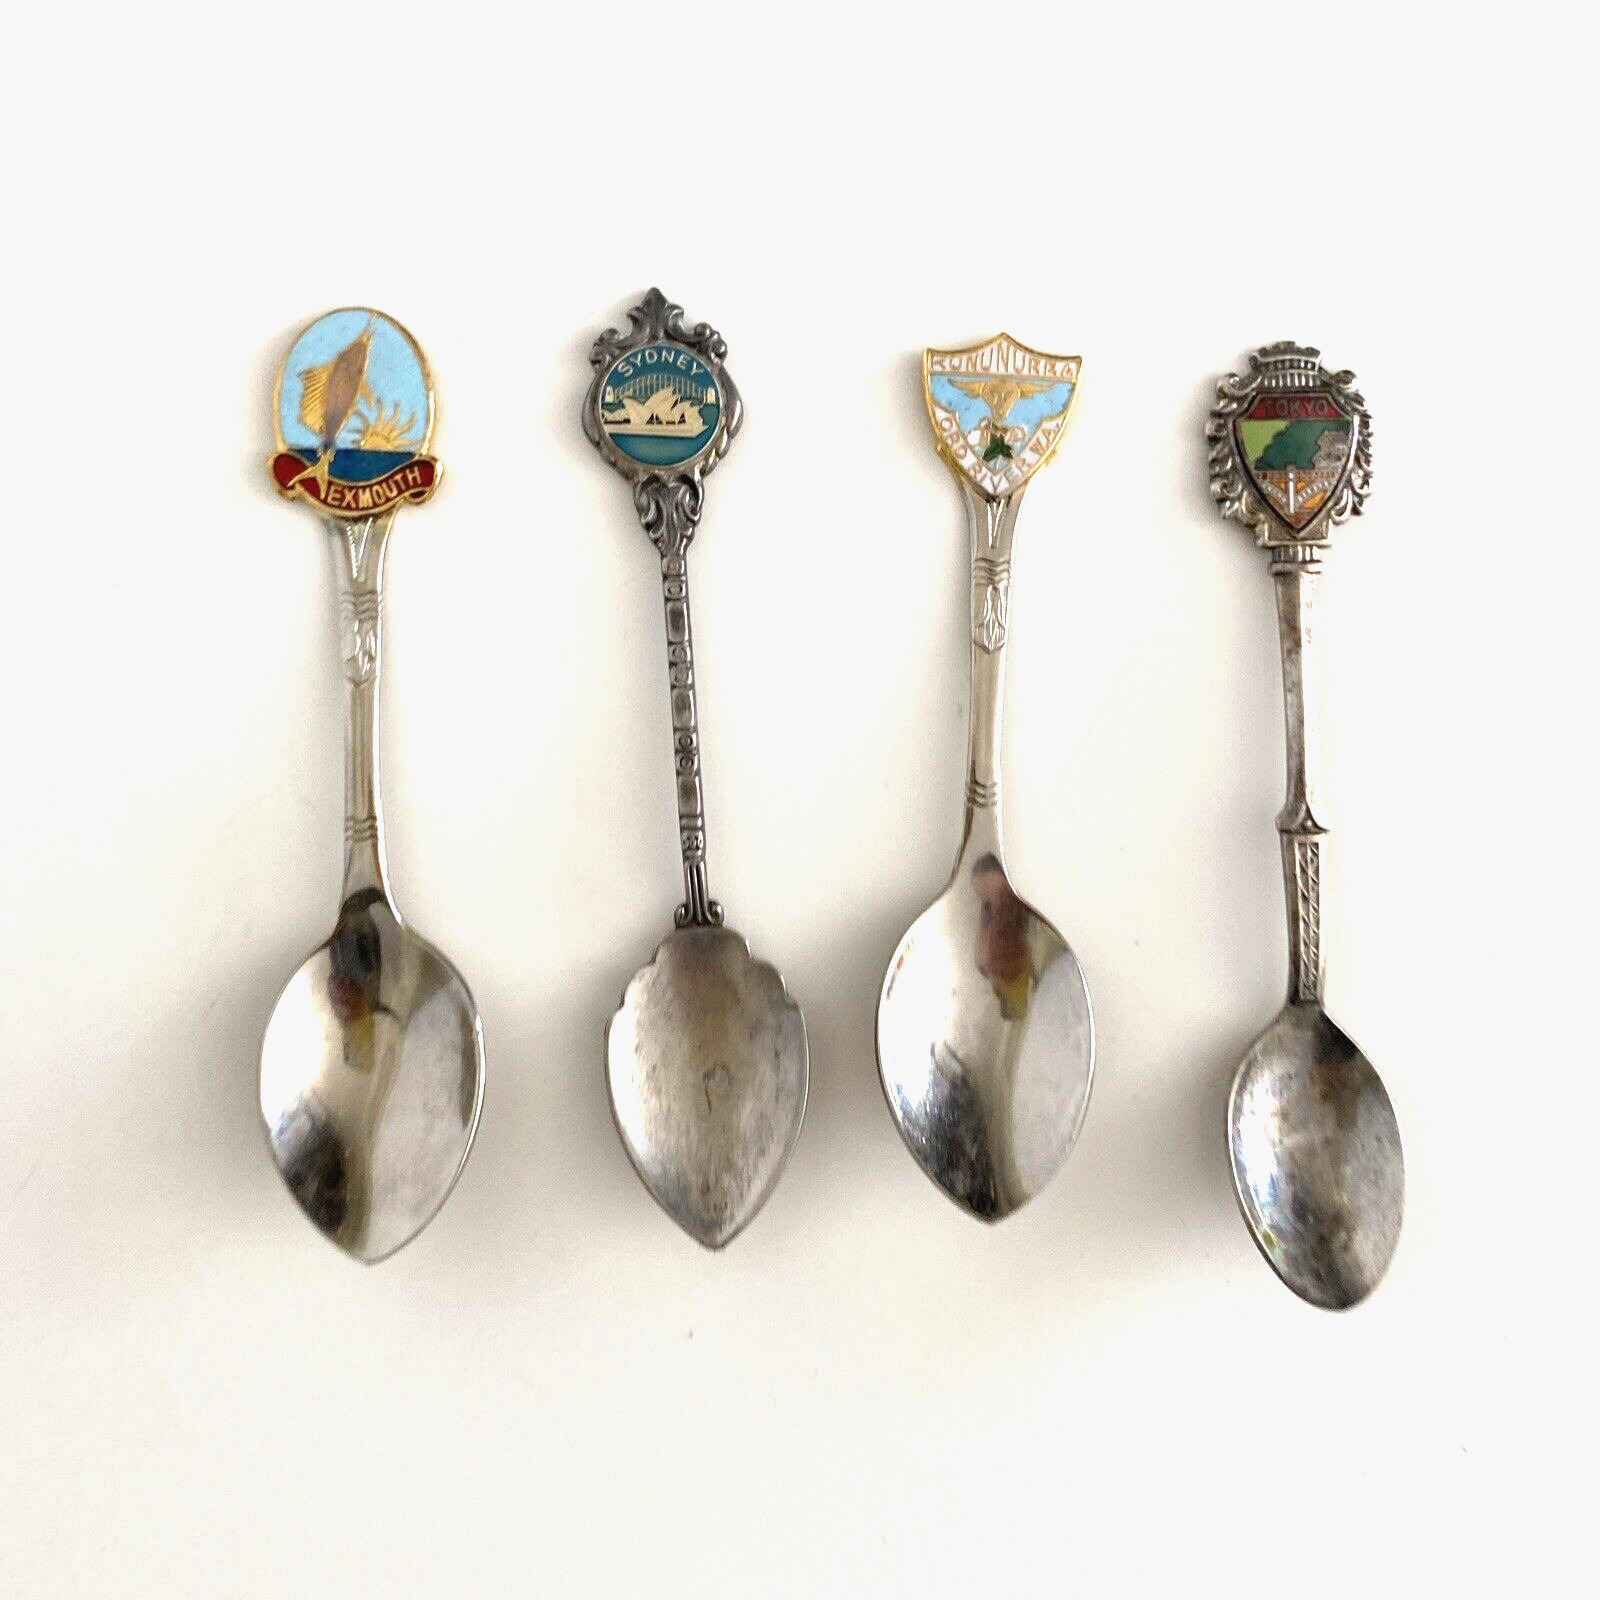 Lot of 4 Vintage Collectable Souvenir Spoons - Sydney Exmouth Tokyo Kununurra